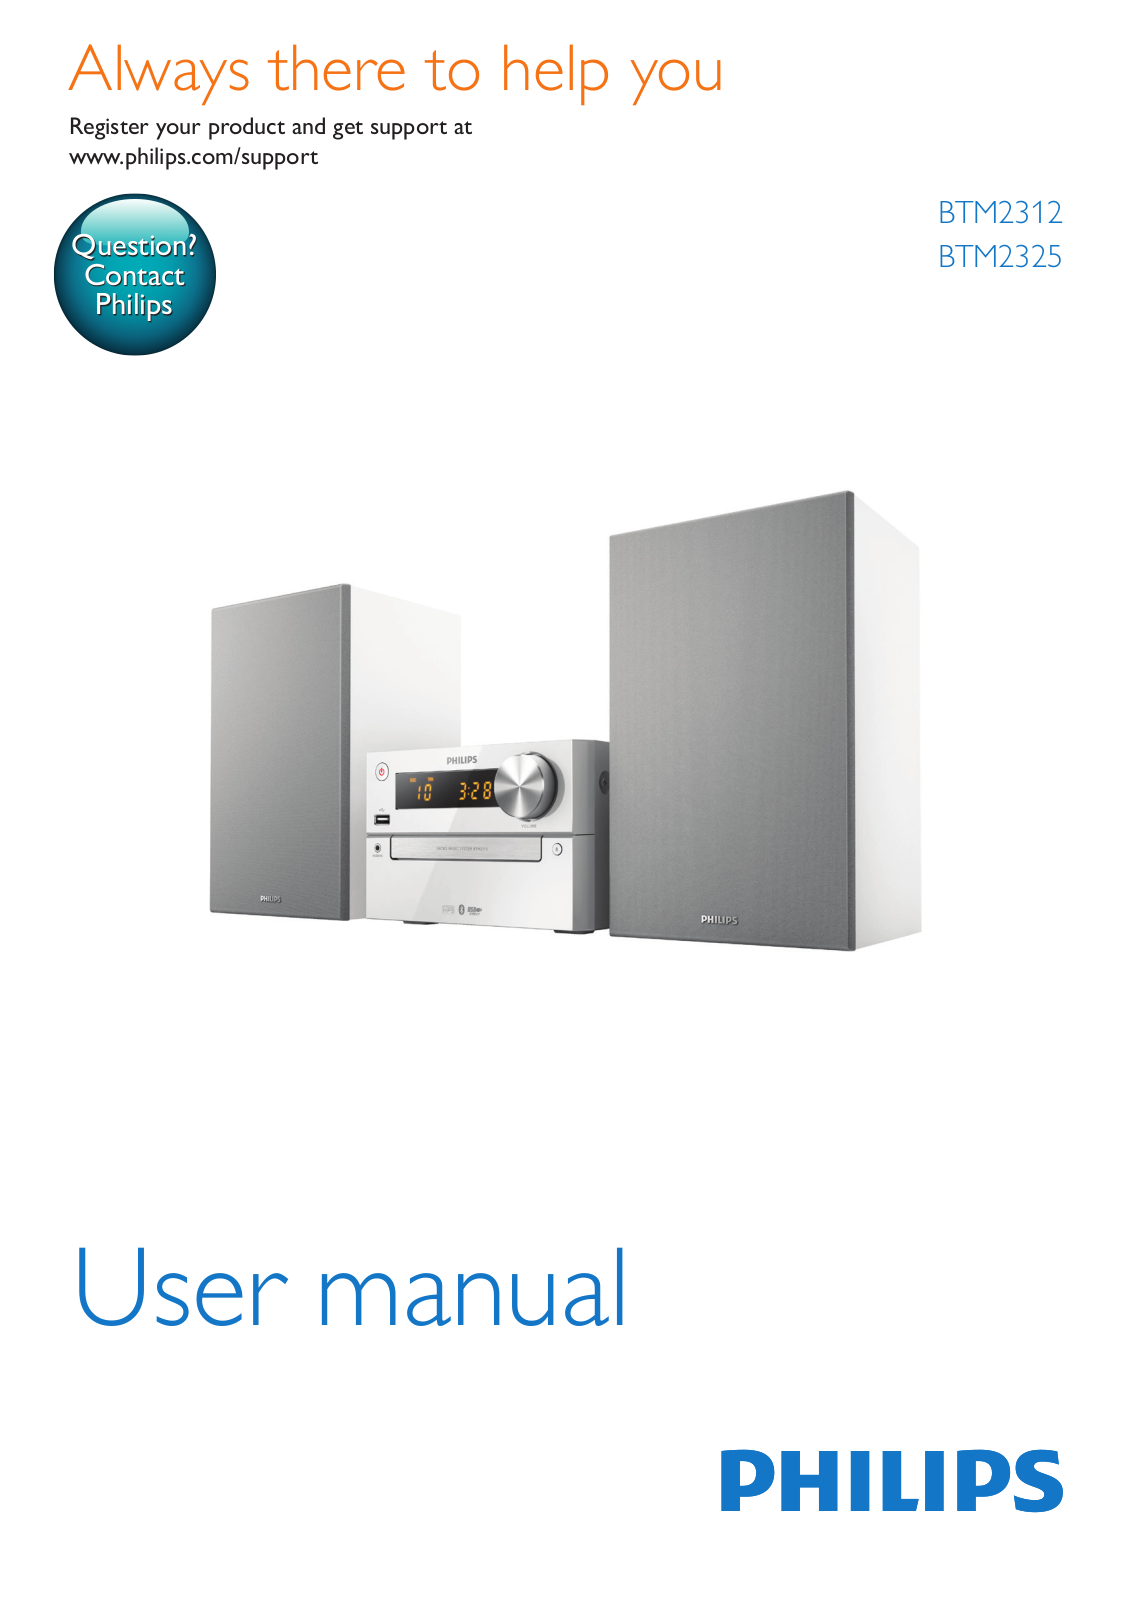 Philips BTM2325, BTM2312 User Manual